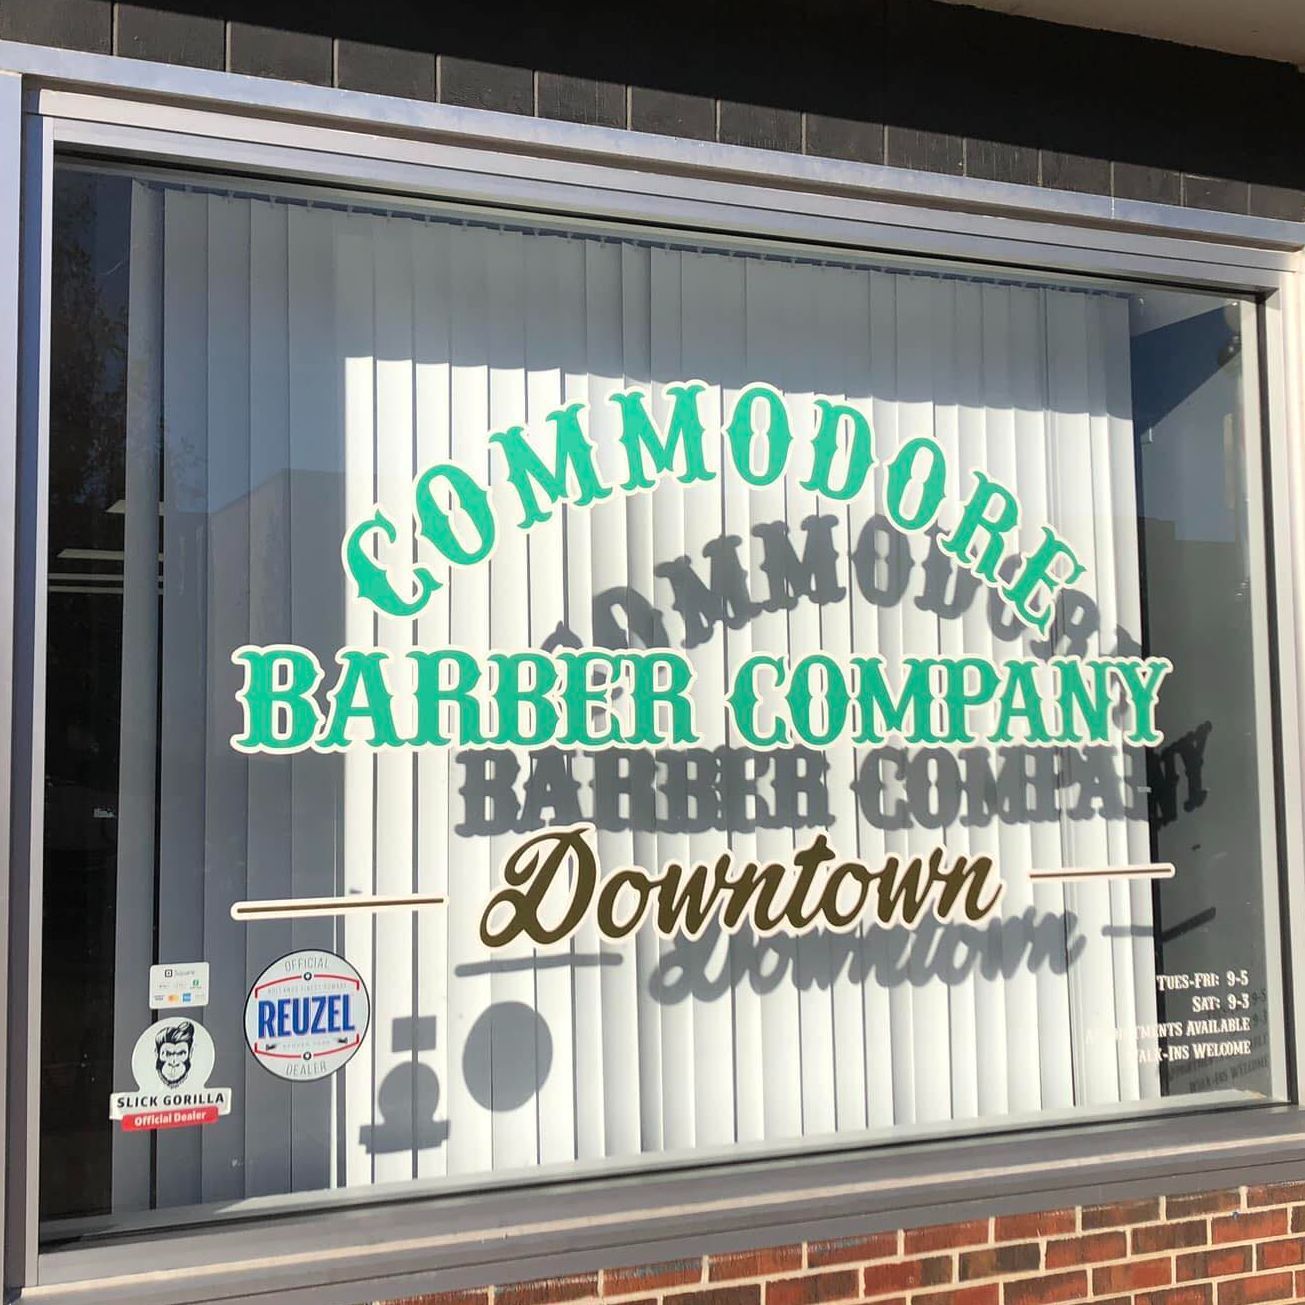 Commodore Barber Company Downtown, 248 W. Main St, Decatur, IL, 62523